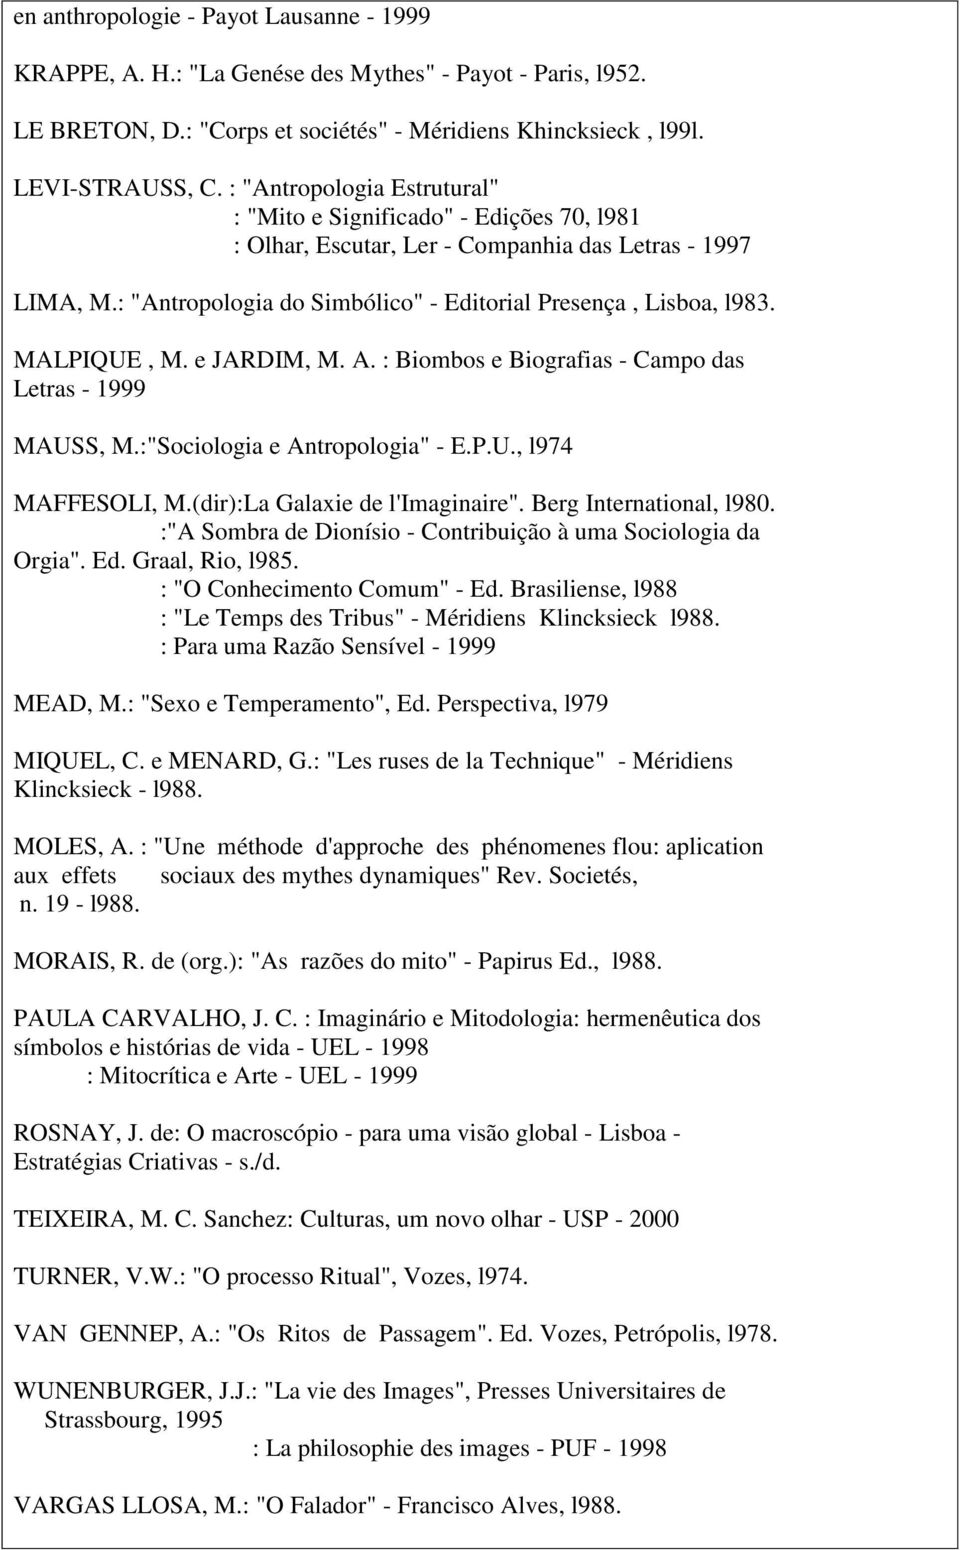 MALPIQUE, M. e JARDIM, M. A. : Biombos e Biografias - Campo das Letras - 1999 MAUSS, M.:"Sociologia e Antropologia" - E.P.U., l974 MAFFESOLI, M.(dir):La Galaxie de l'imaginaire".